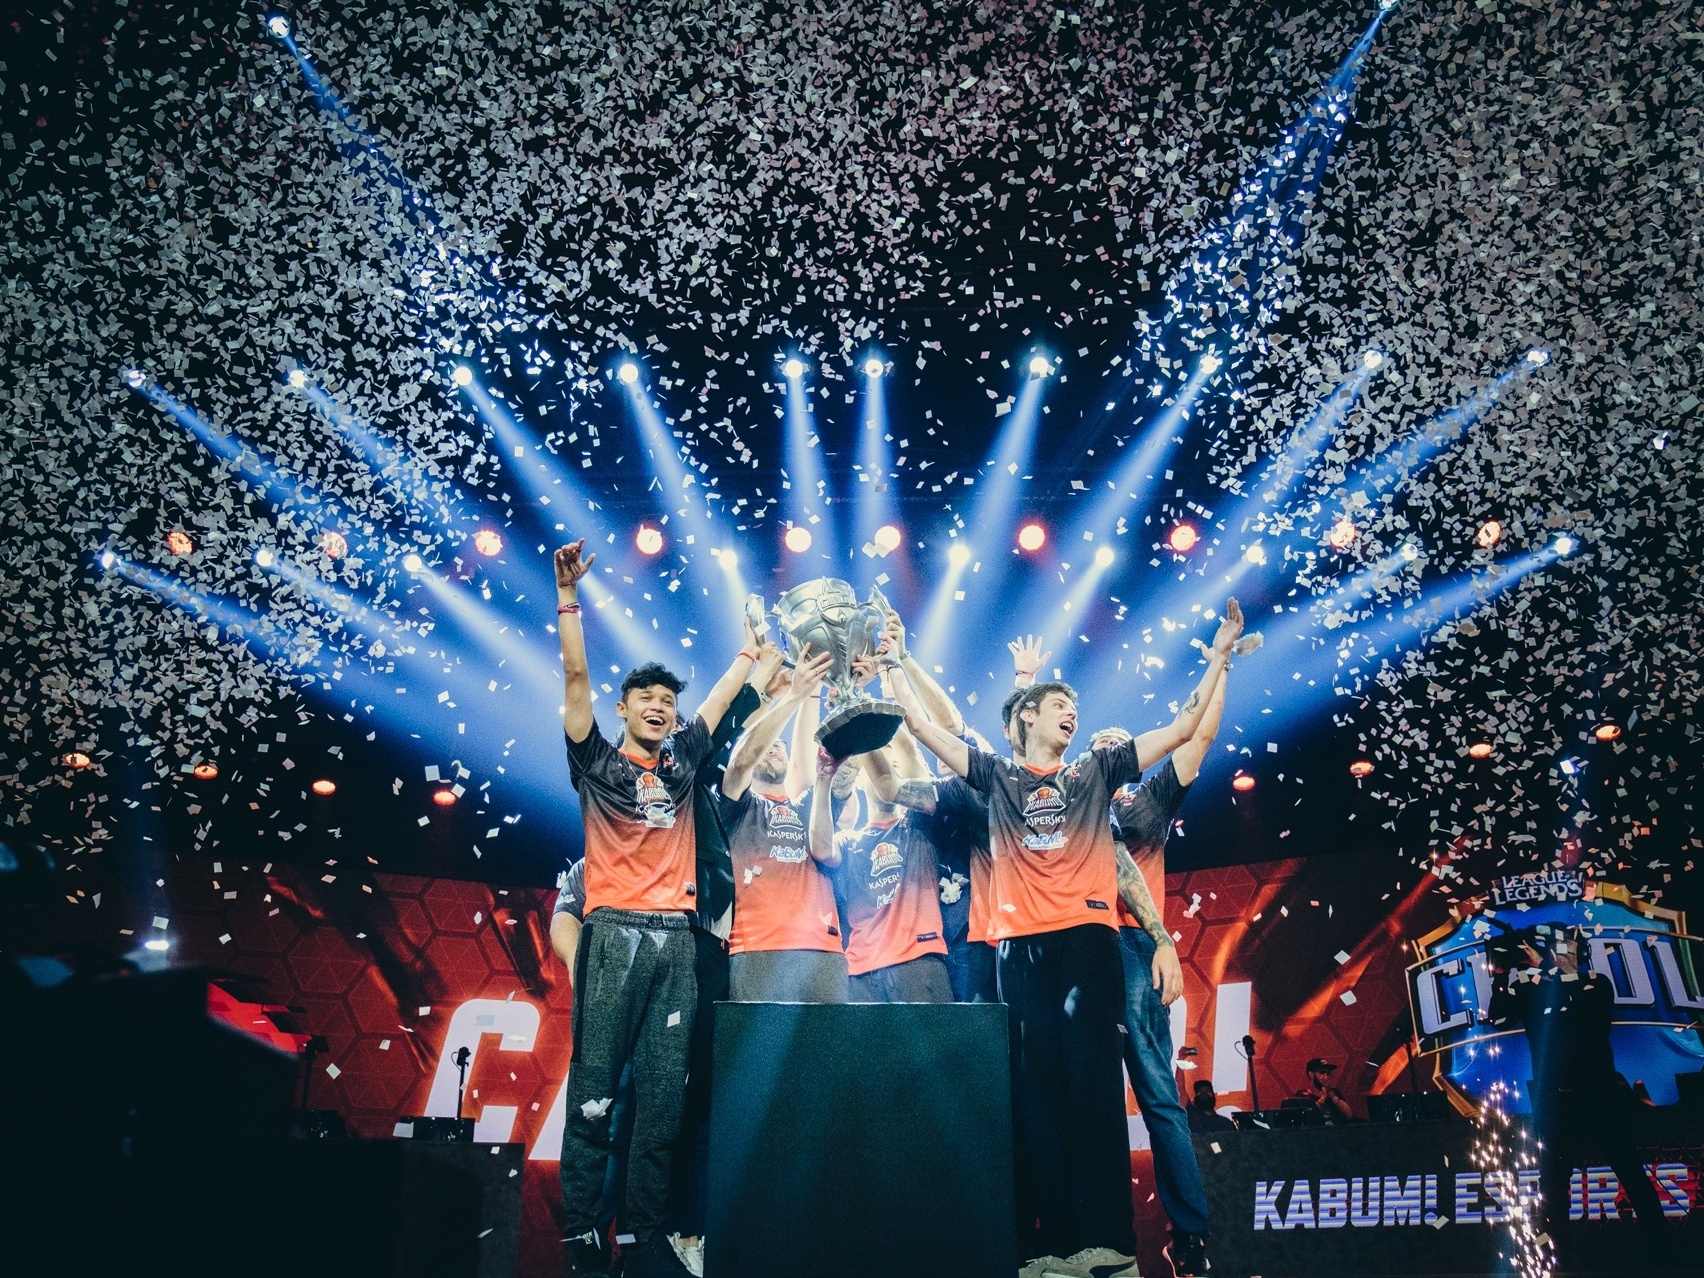 KaBuM! vence campeonato brasileiro de League of Legends